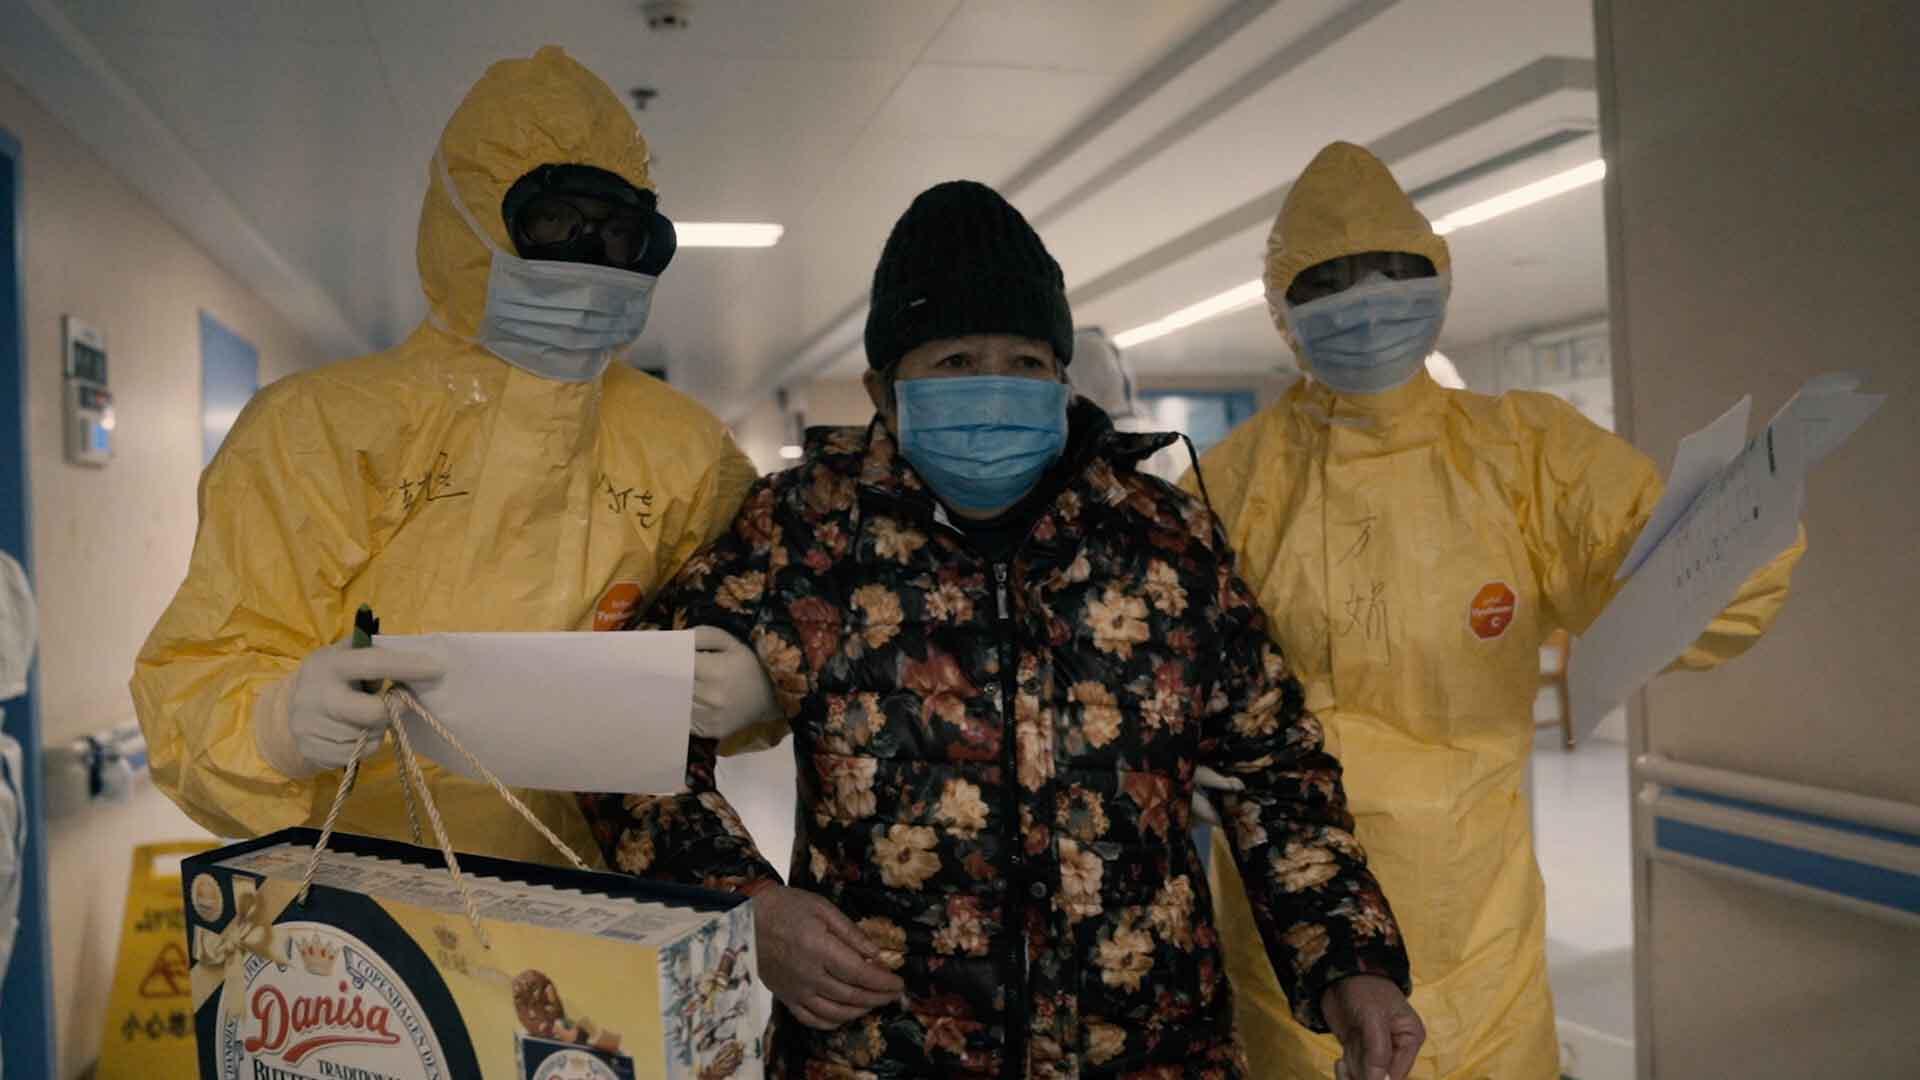 بیمار به همراه پزشکان در بیمارستان در فیلم 76 Days